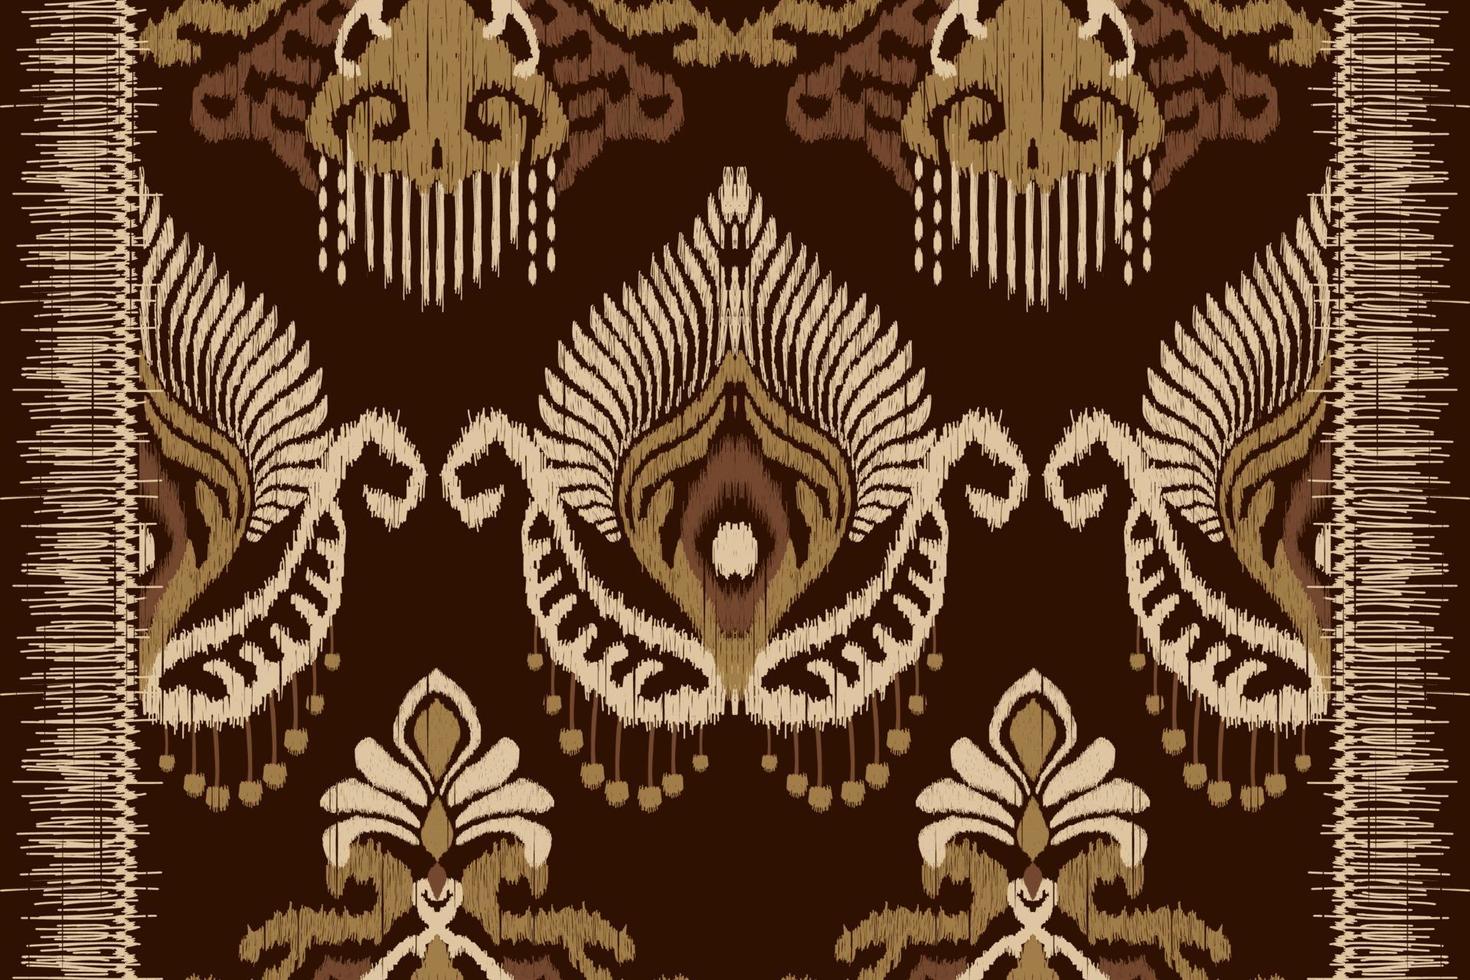 broderie paisley ikat africaine sur fond marron.motif géométrique oriental ethnique traditionnel.vecteur abstrait de style aztèque.design pour la texture, le tissu, les vêtements, l'emballage, la décoration, le tapis. vecteur